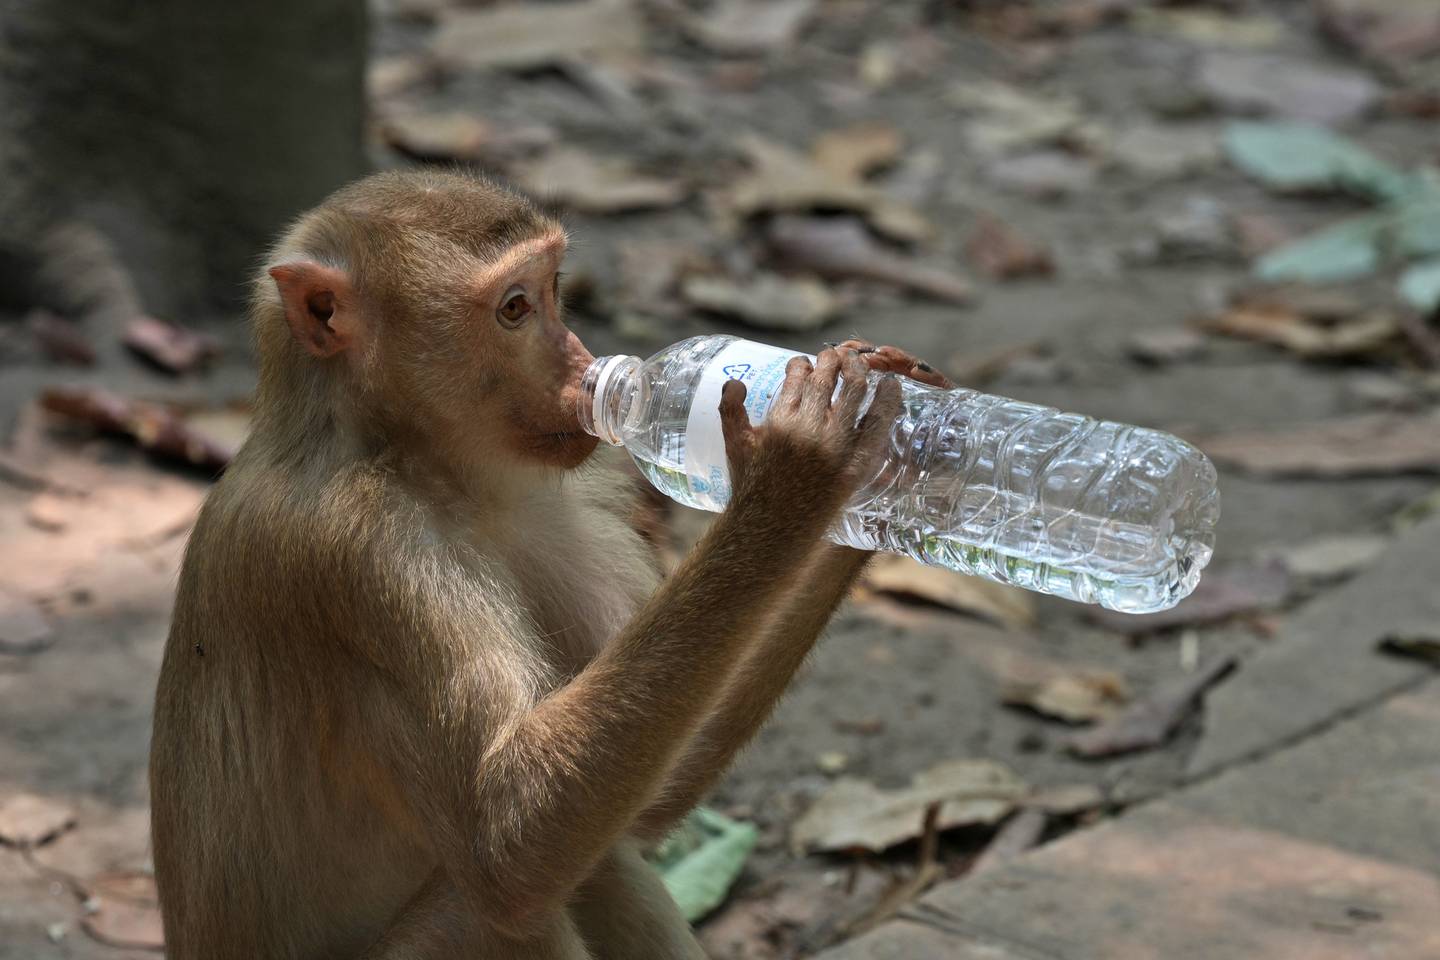 En ape i ruinbyen Angkor i Kambodsja drikker fra en vannflaske. Mange turister gir mat og drikke direkte til apene, som dermed blir vant til en nær interaksjon med mennesker. Det fører til at noen aper direkte angriper turister i et forsøk på å få tak i maten deres.